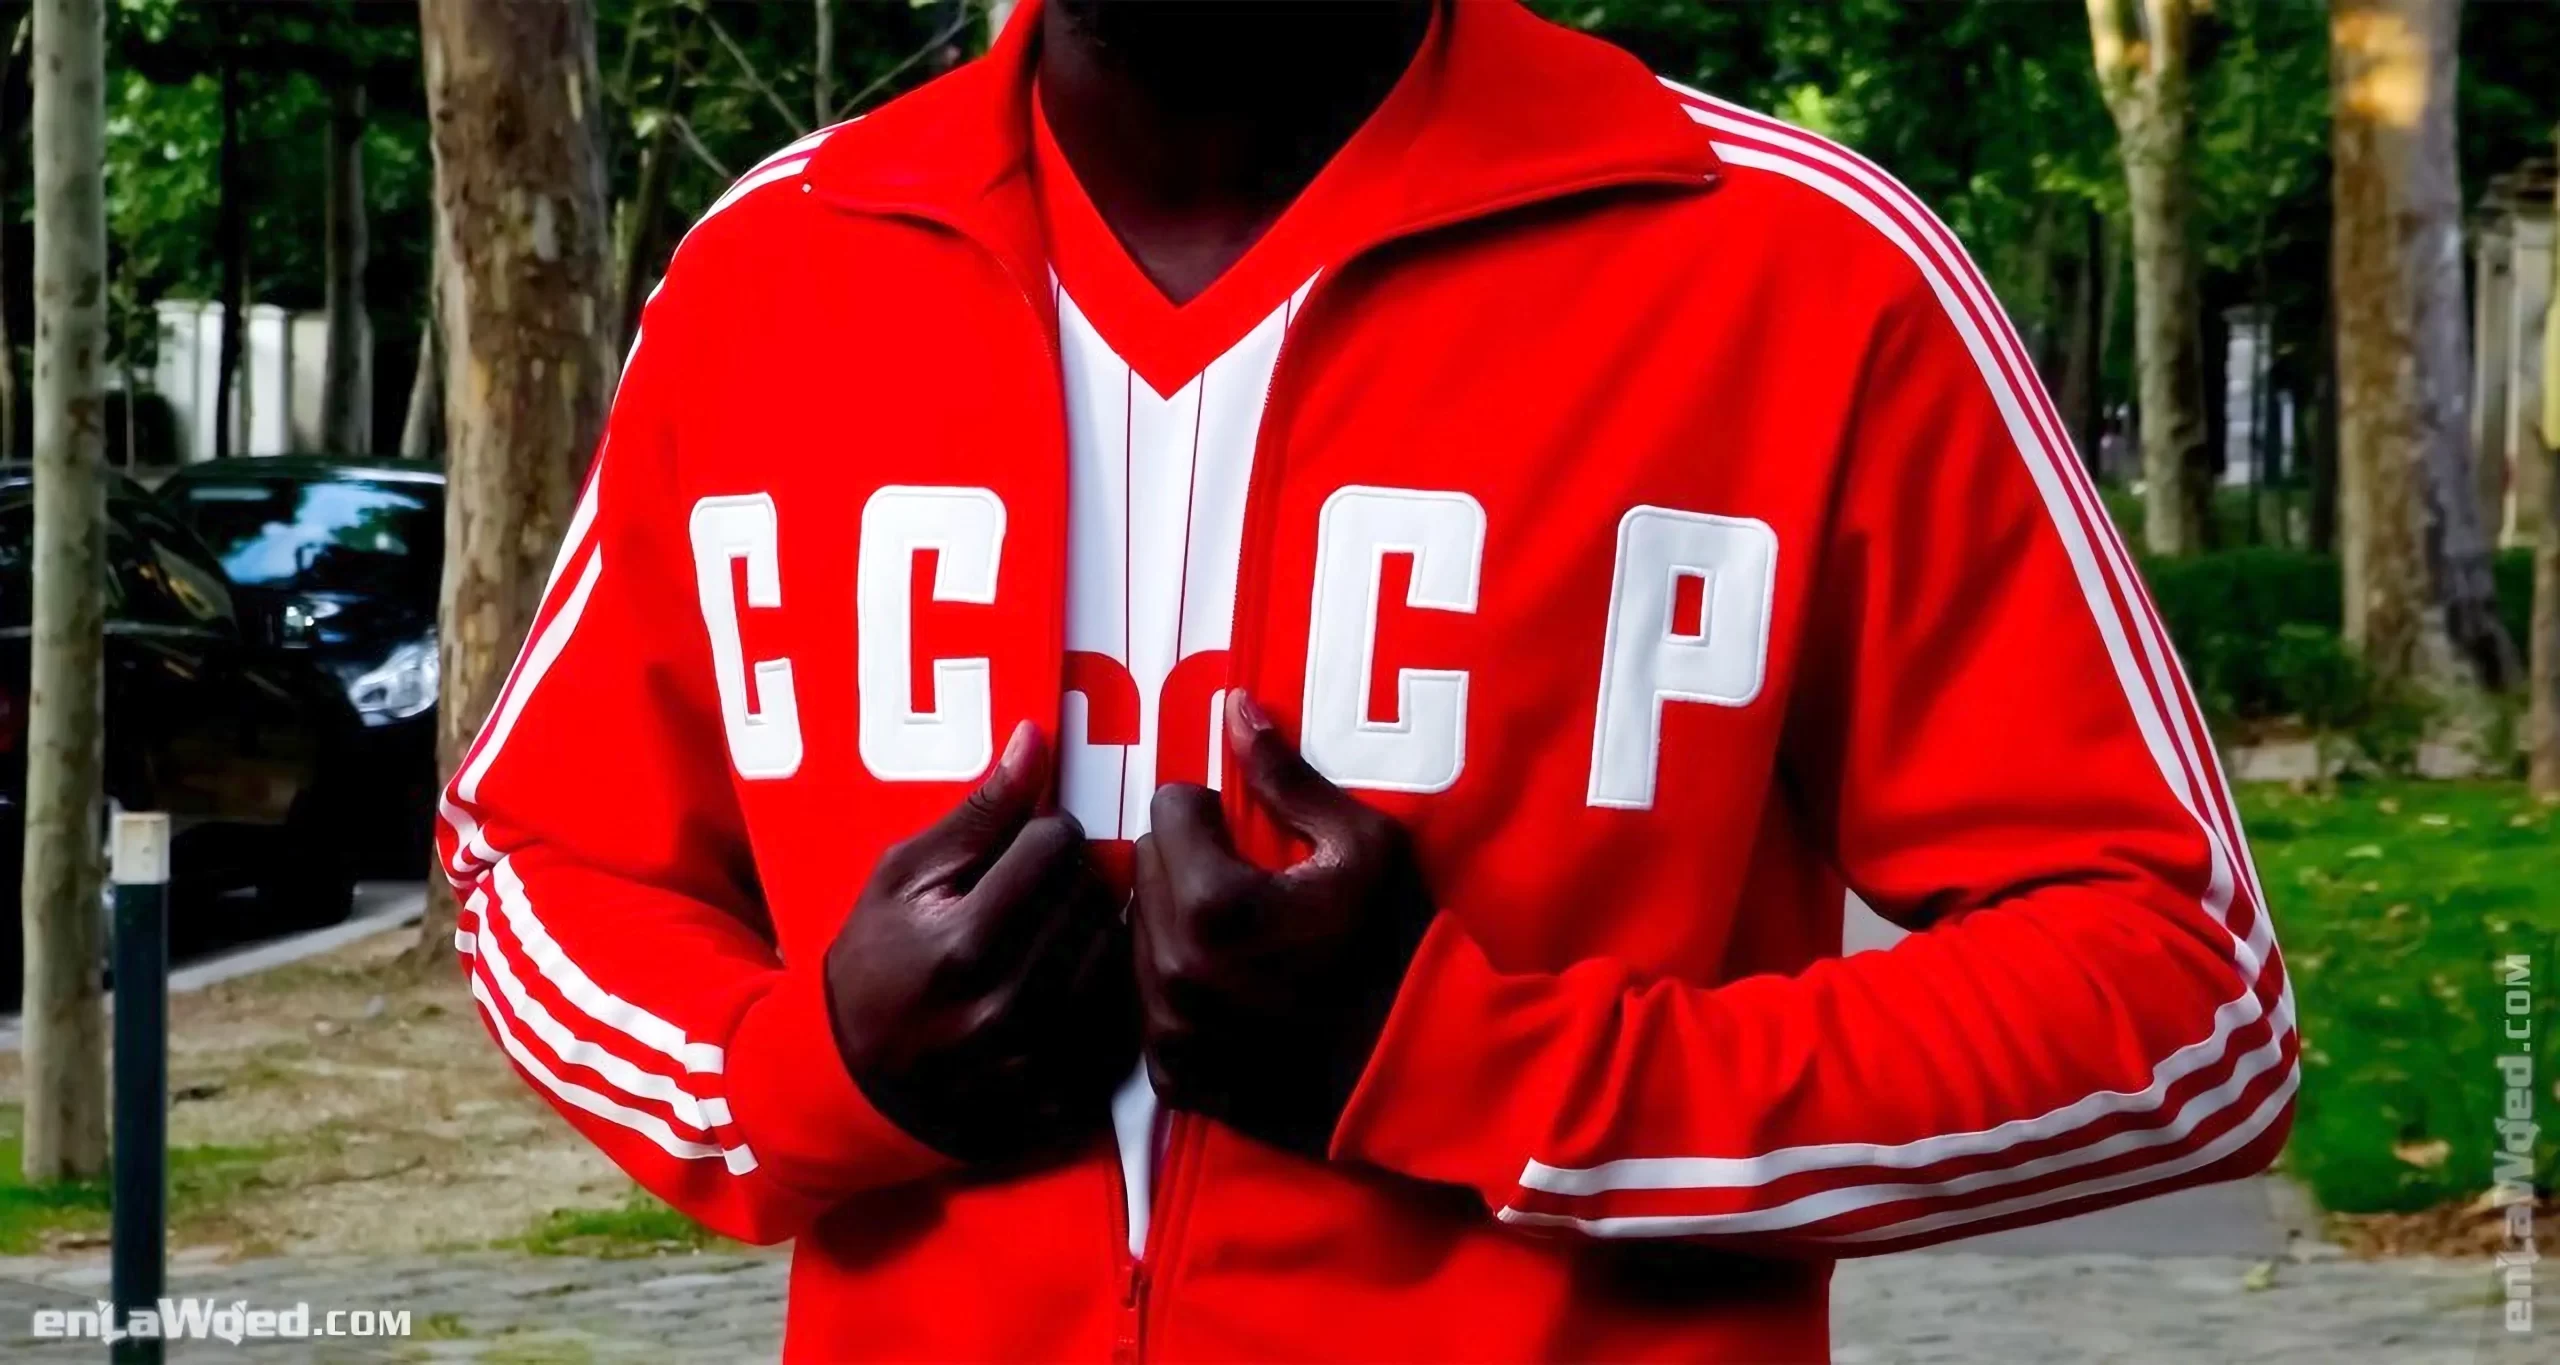 Men’s 2002 Soviet CCCP ’82 TT by Adidas Originals: Epic (EnLawded.com file #lmc53udsvenlbyaxs2a)